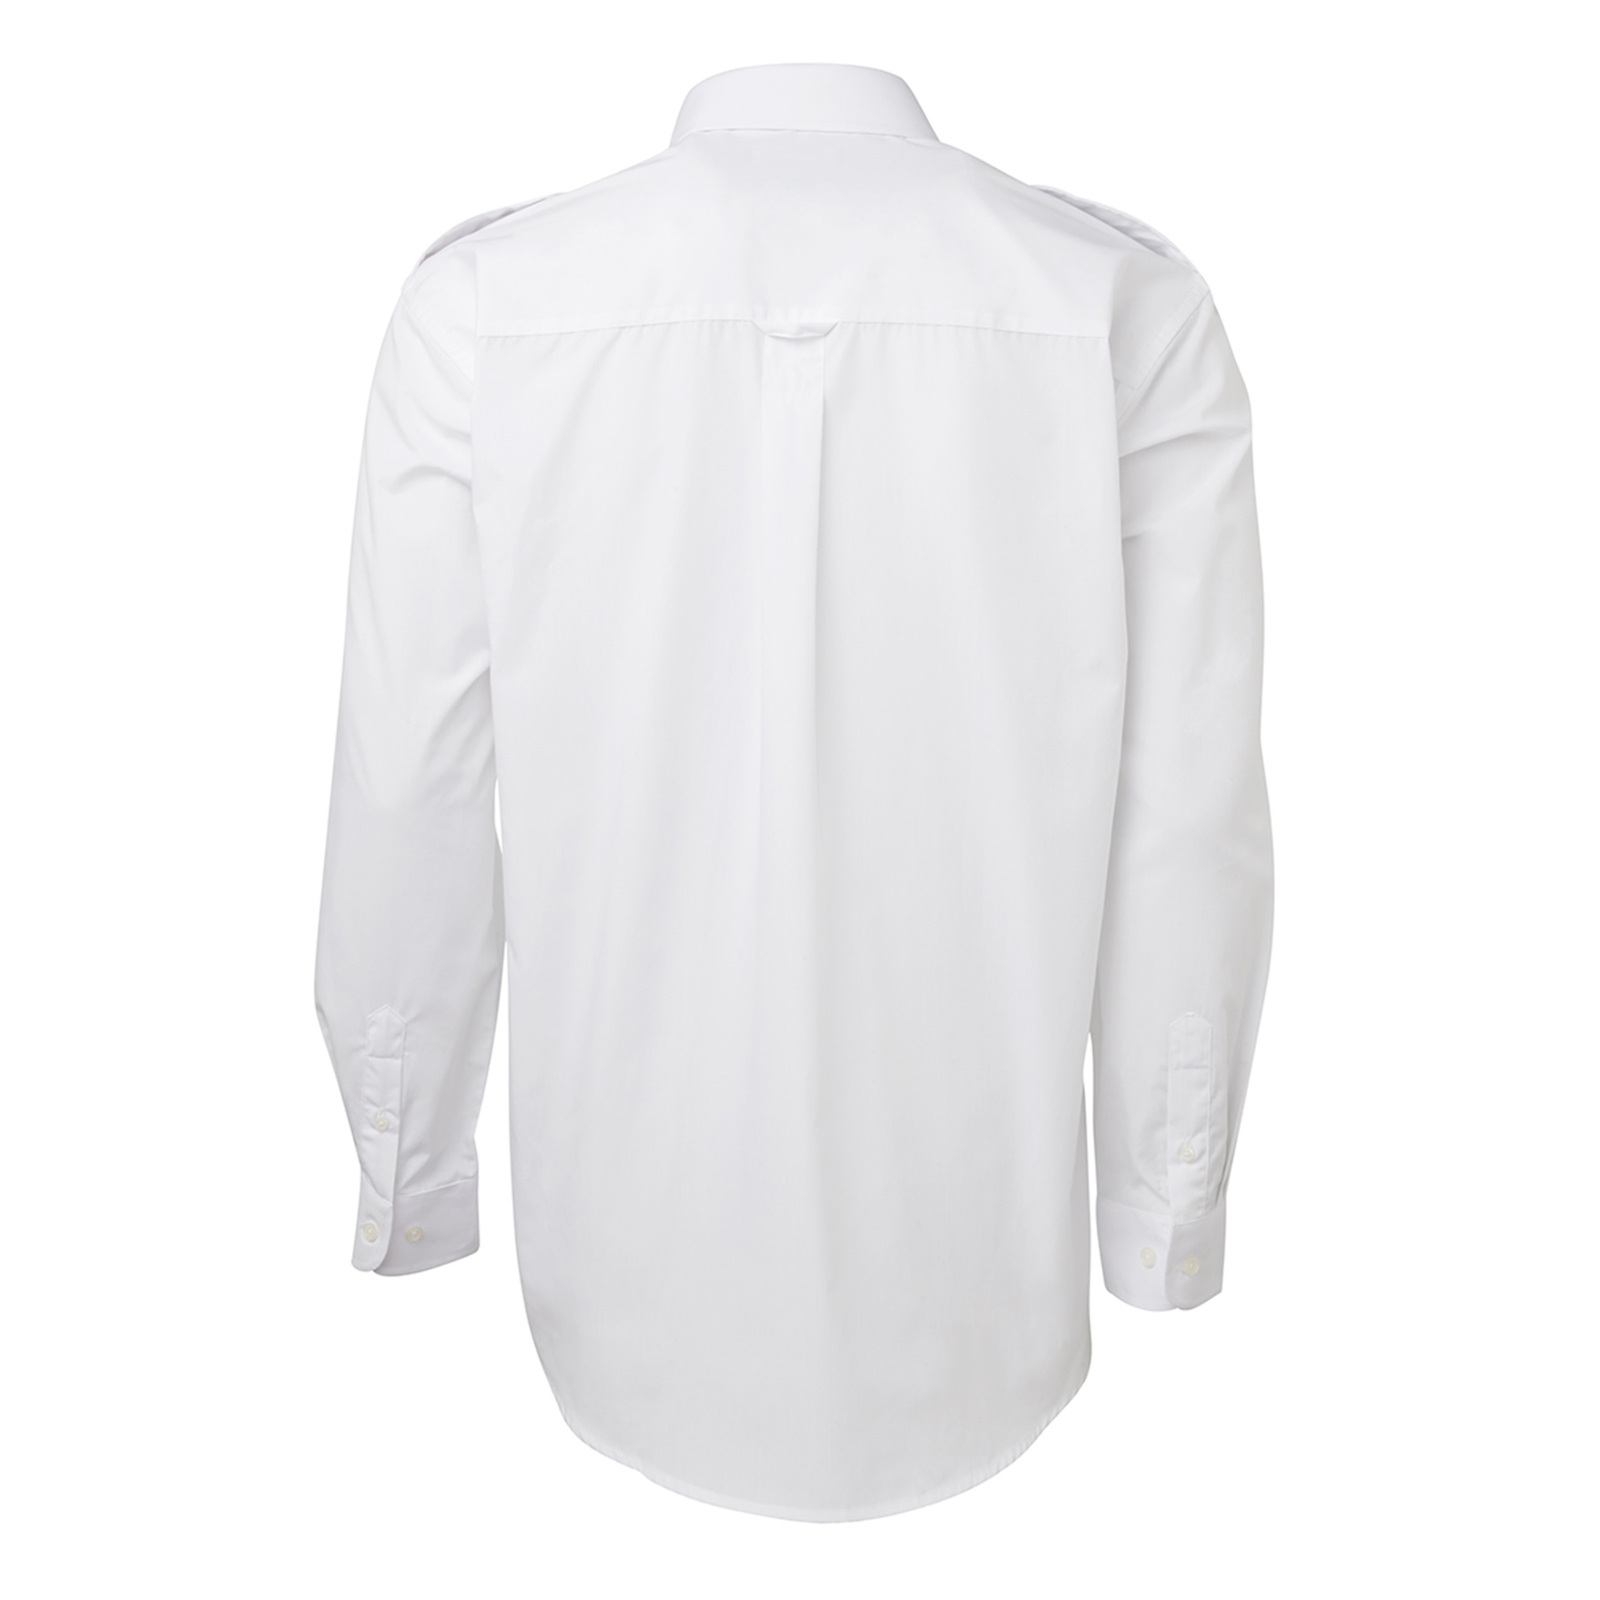 JB's Wear White Mens Epaulette Shirt - Long Sleeve